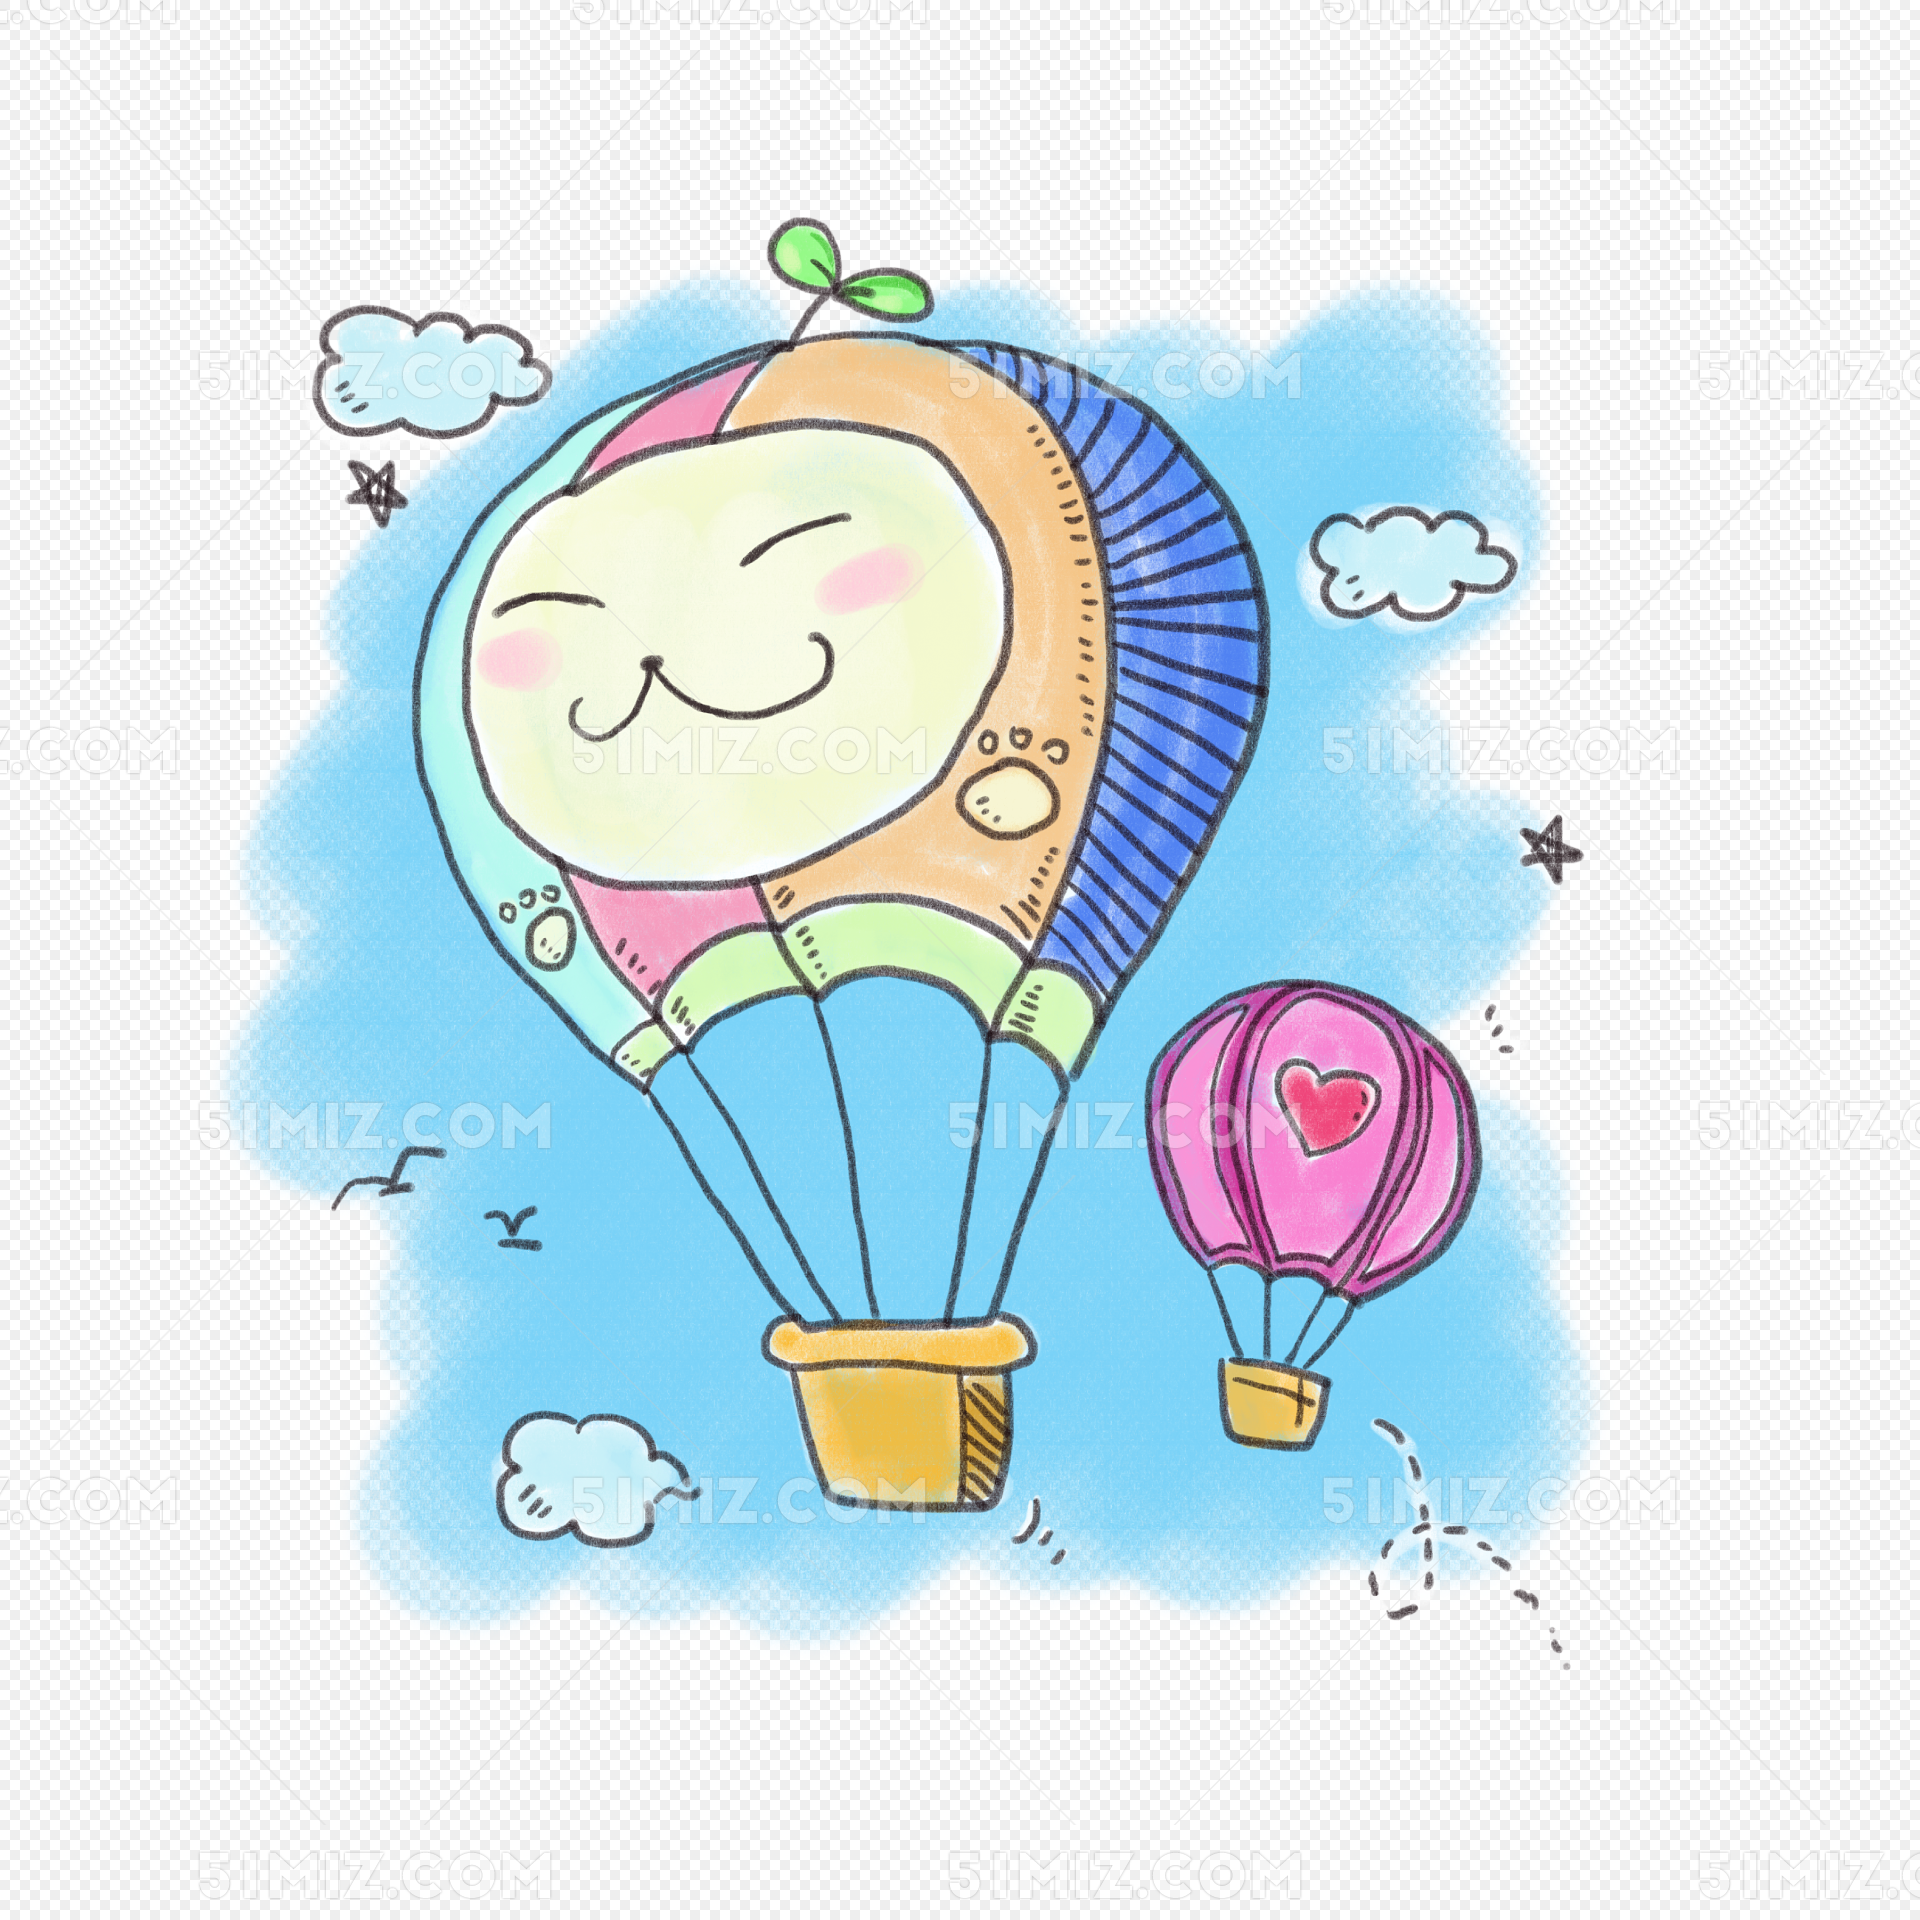 手绘卡通热气球矢量图片素材免费下载 - 觅知网